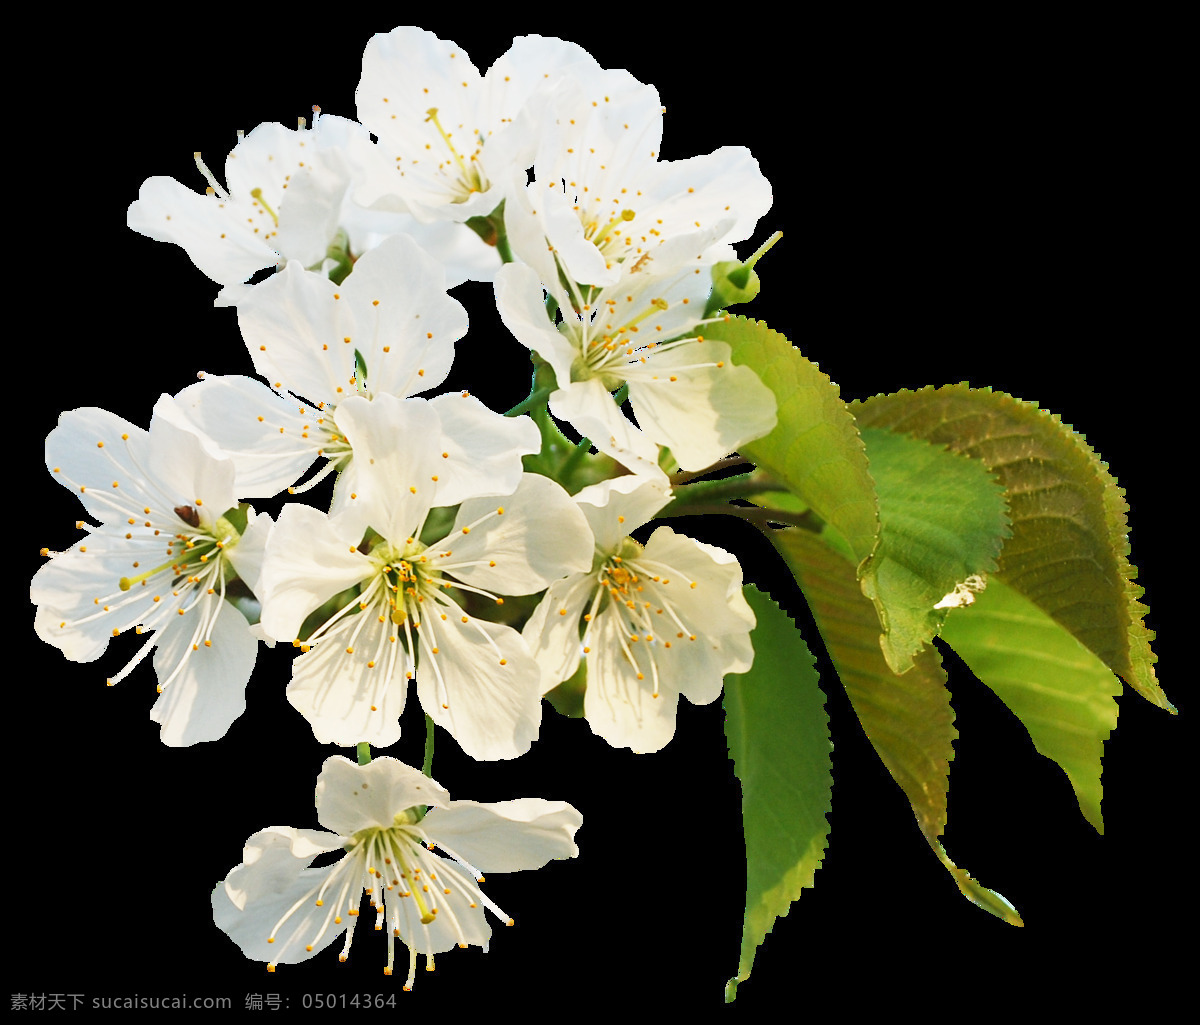 清新 白色 花瓣 樱花 装饰 元素 黄色花蕊 绿色树叶 清新风格 装饰元素